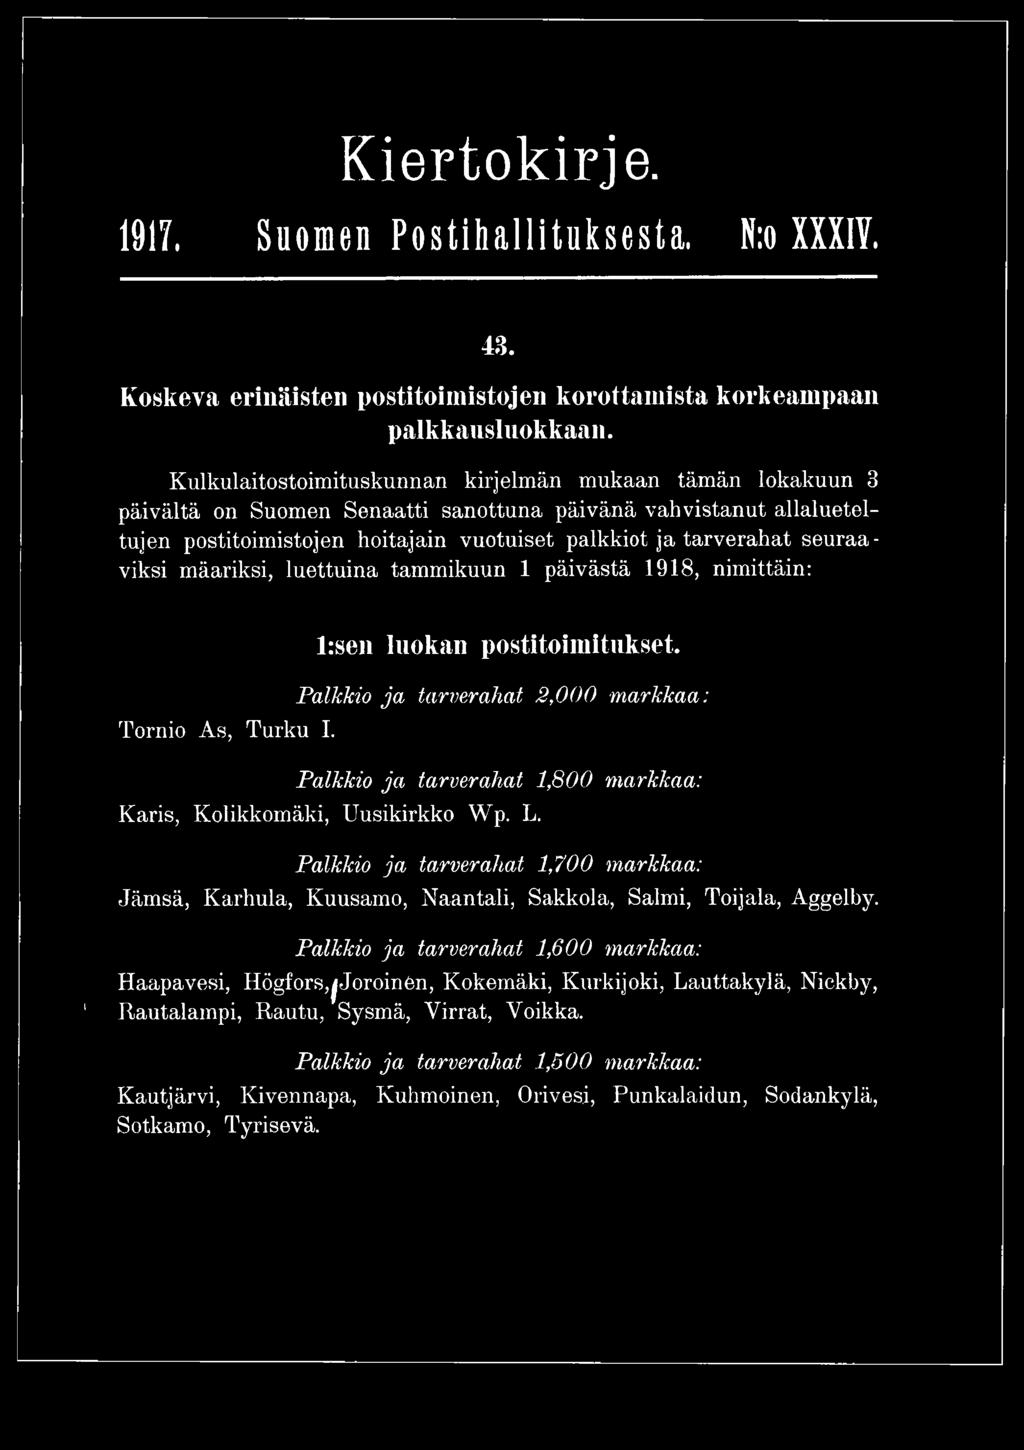 seuraaviksi määriksi, luettuina tammikuun 1 päivästä 1918, nimittäin: Tornio As, Turku I. l:sen luokan postitoimitukset.